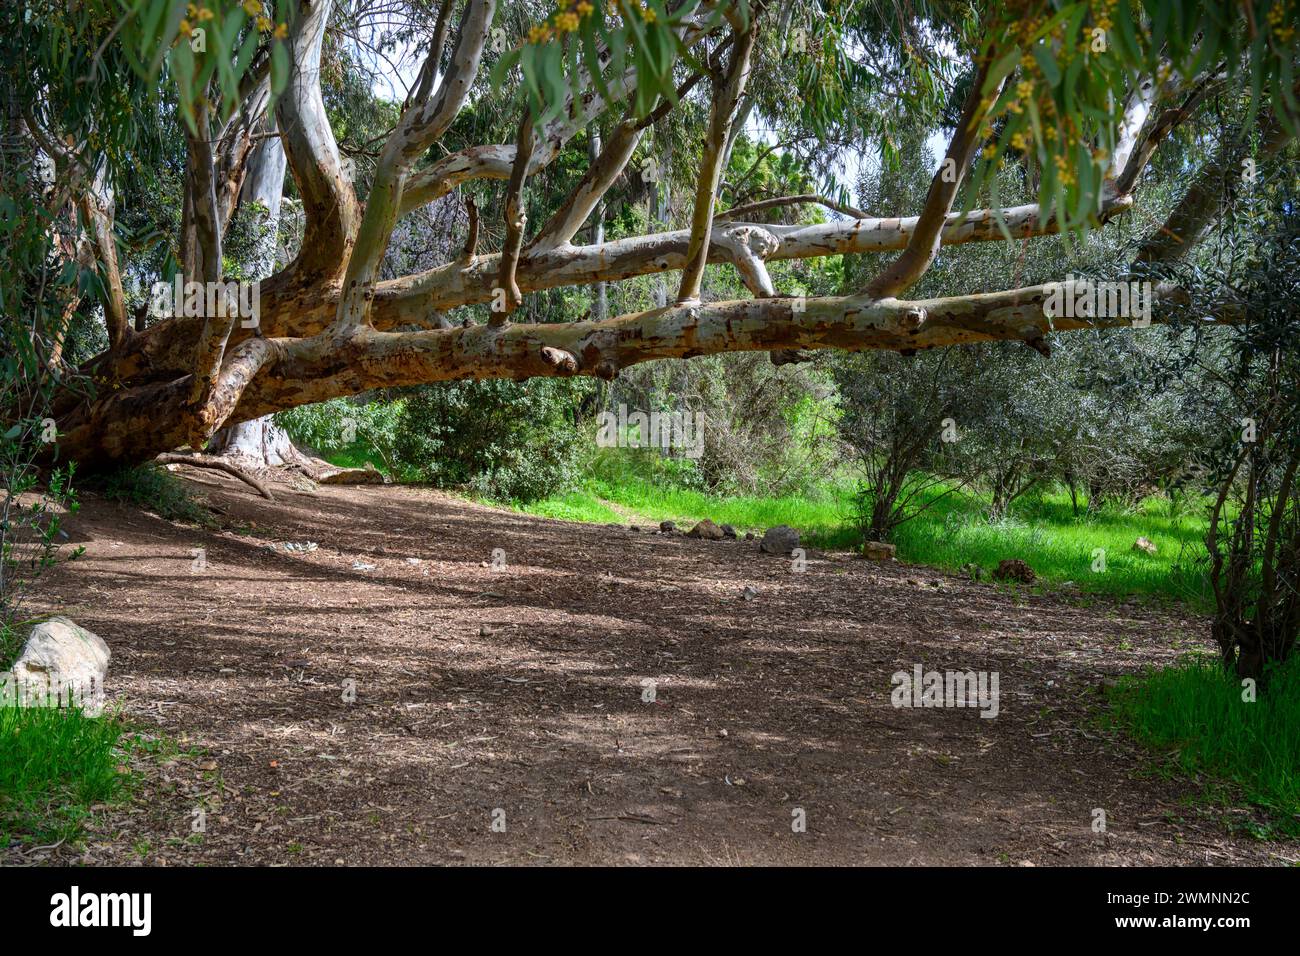 Tronc d'eucalyptus inclinable. Quelques randonneurs inconsidérés ont gravé leurs noms dans le tronc photographié dans les collines de Jérusalem, près de Beit Sheme Banque D'Images